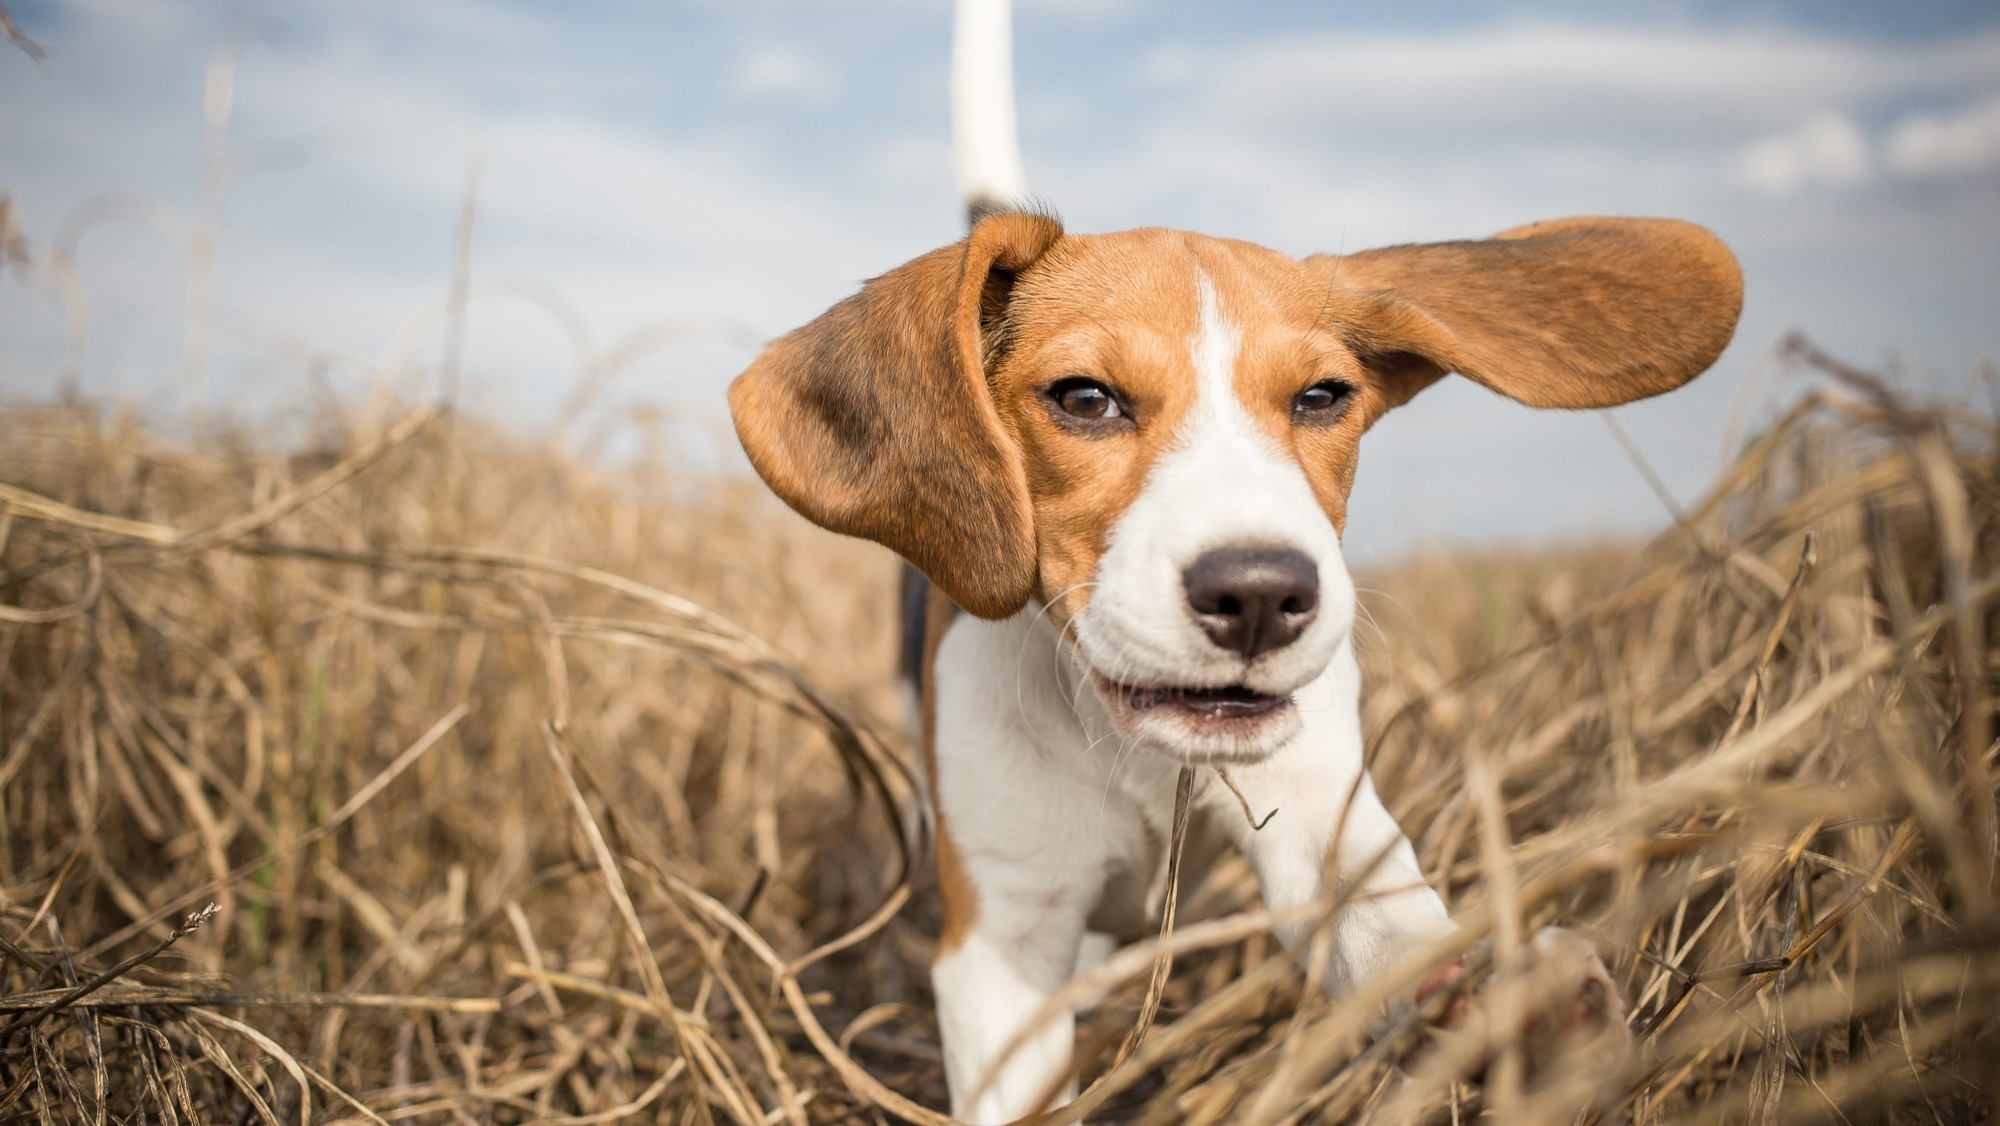 A beagle running through grass.